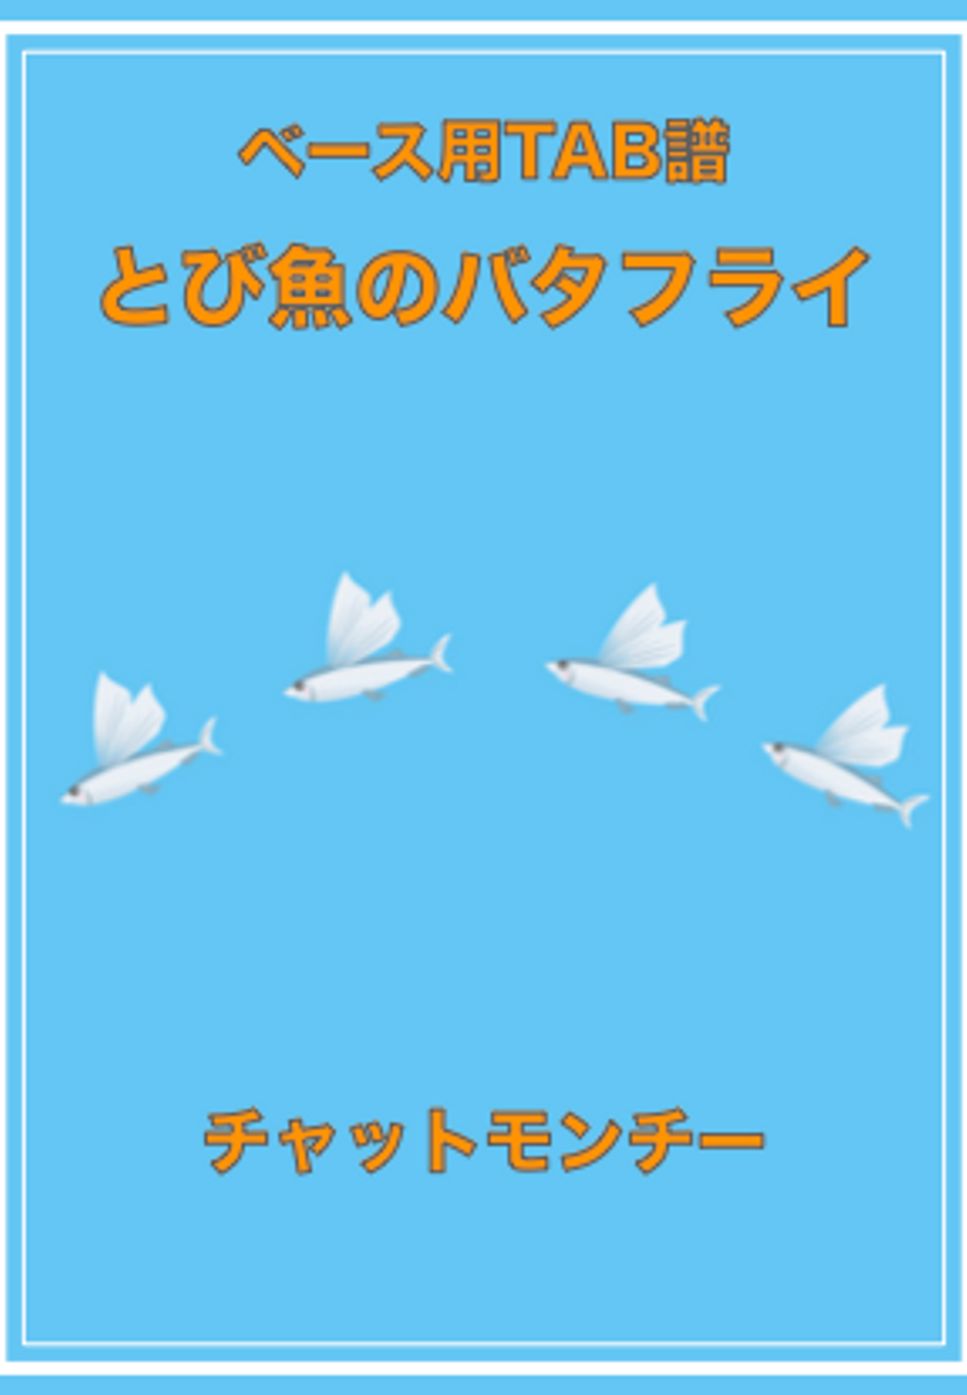 チャットモンチー - とび魚のバタフライ (ベースTAB譜) by ベースライン研究所たぺ